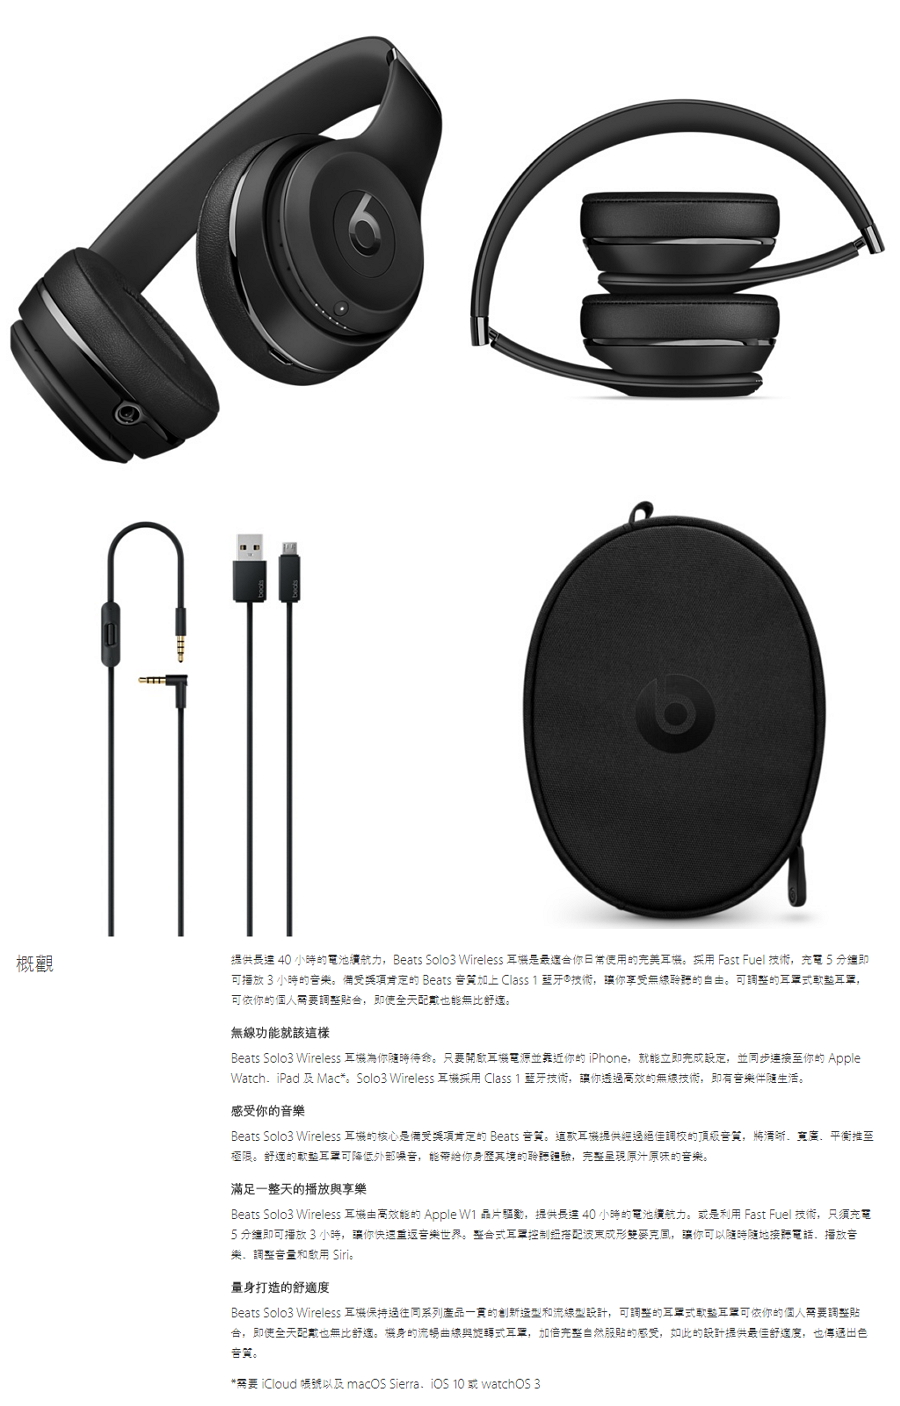 【人氣商品】Beats Solo3 Wireless 頭戴式耳機黑 MP582ZP/A【活動產品】